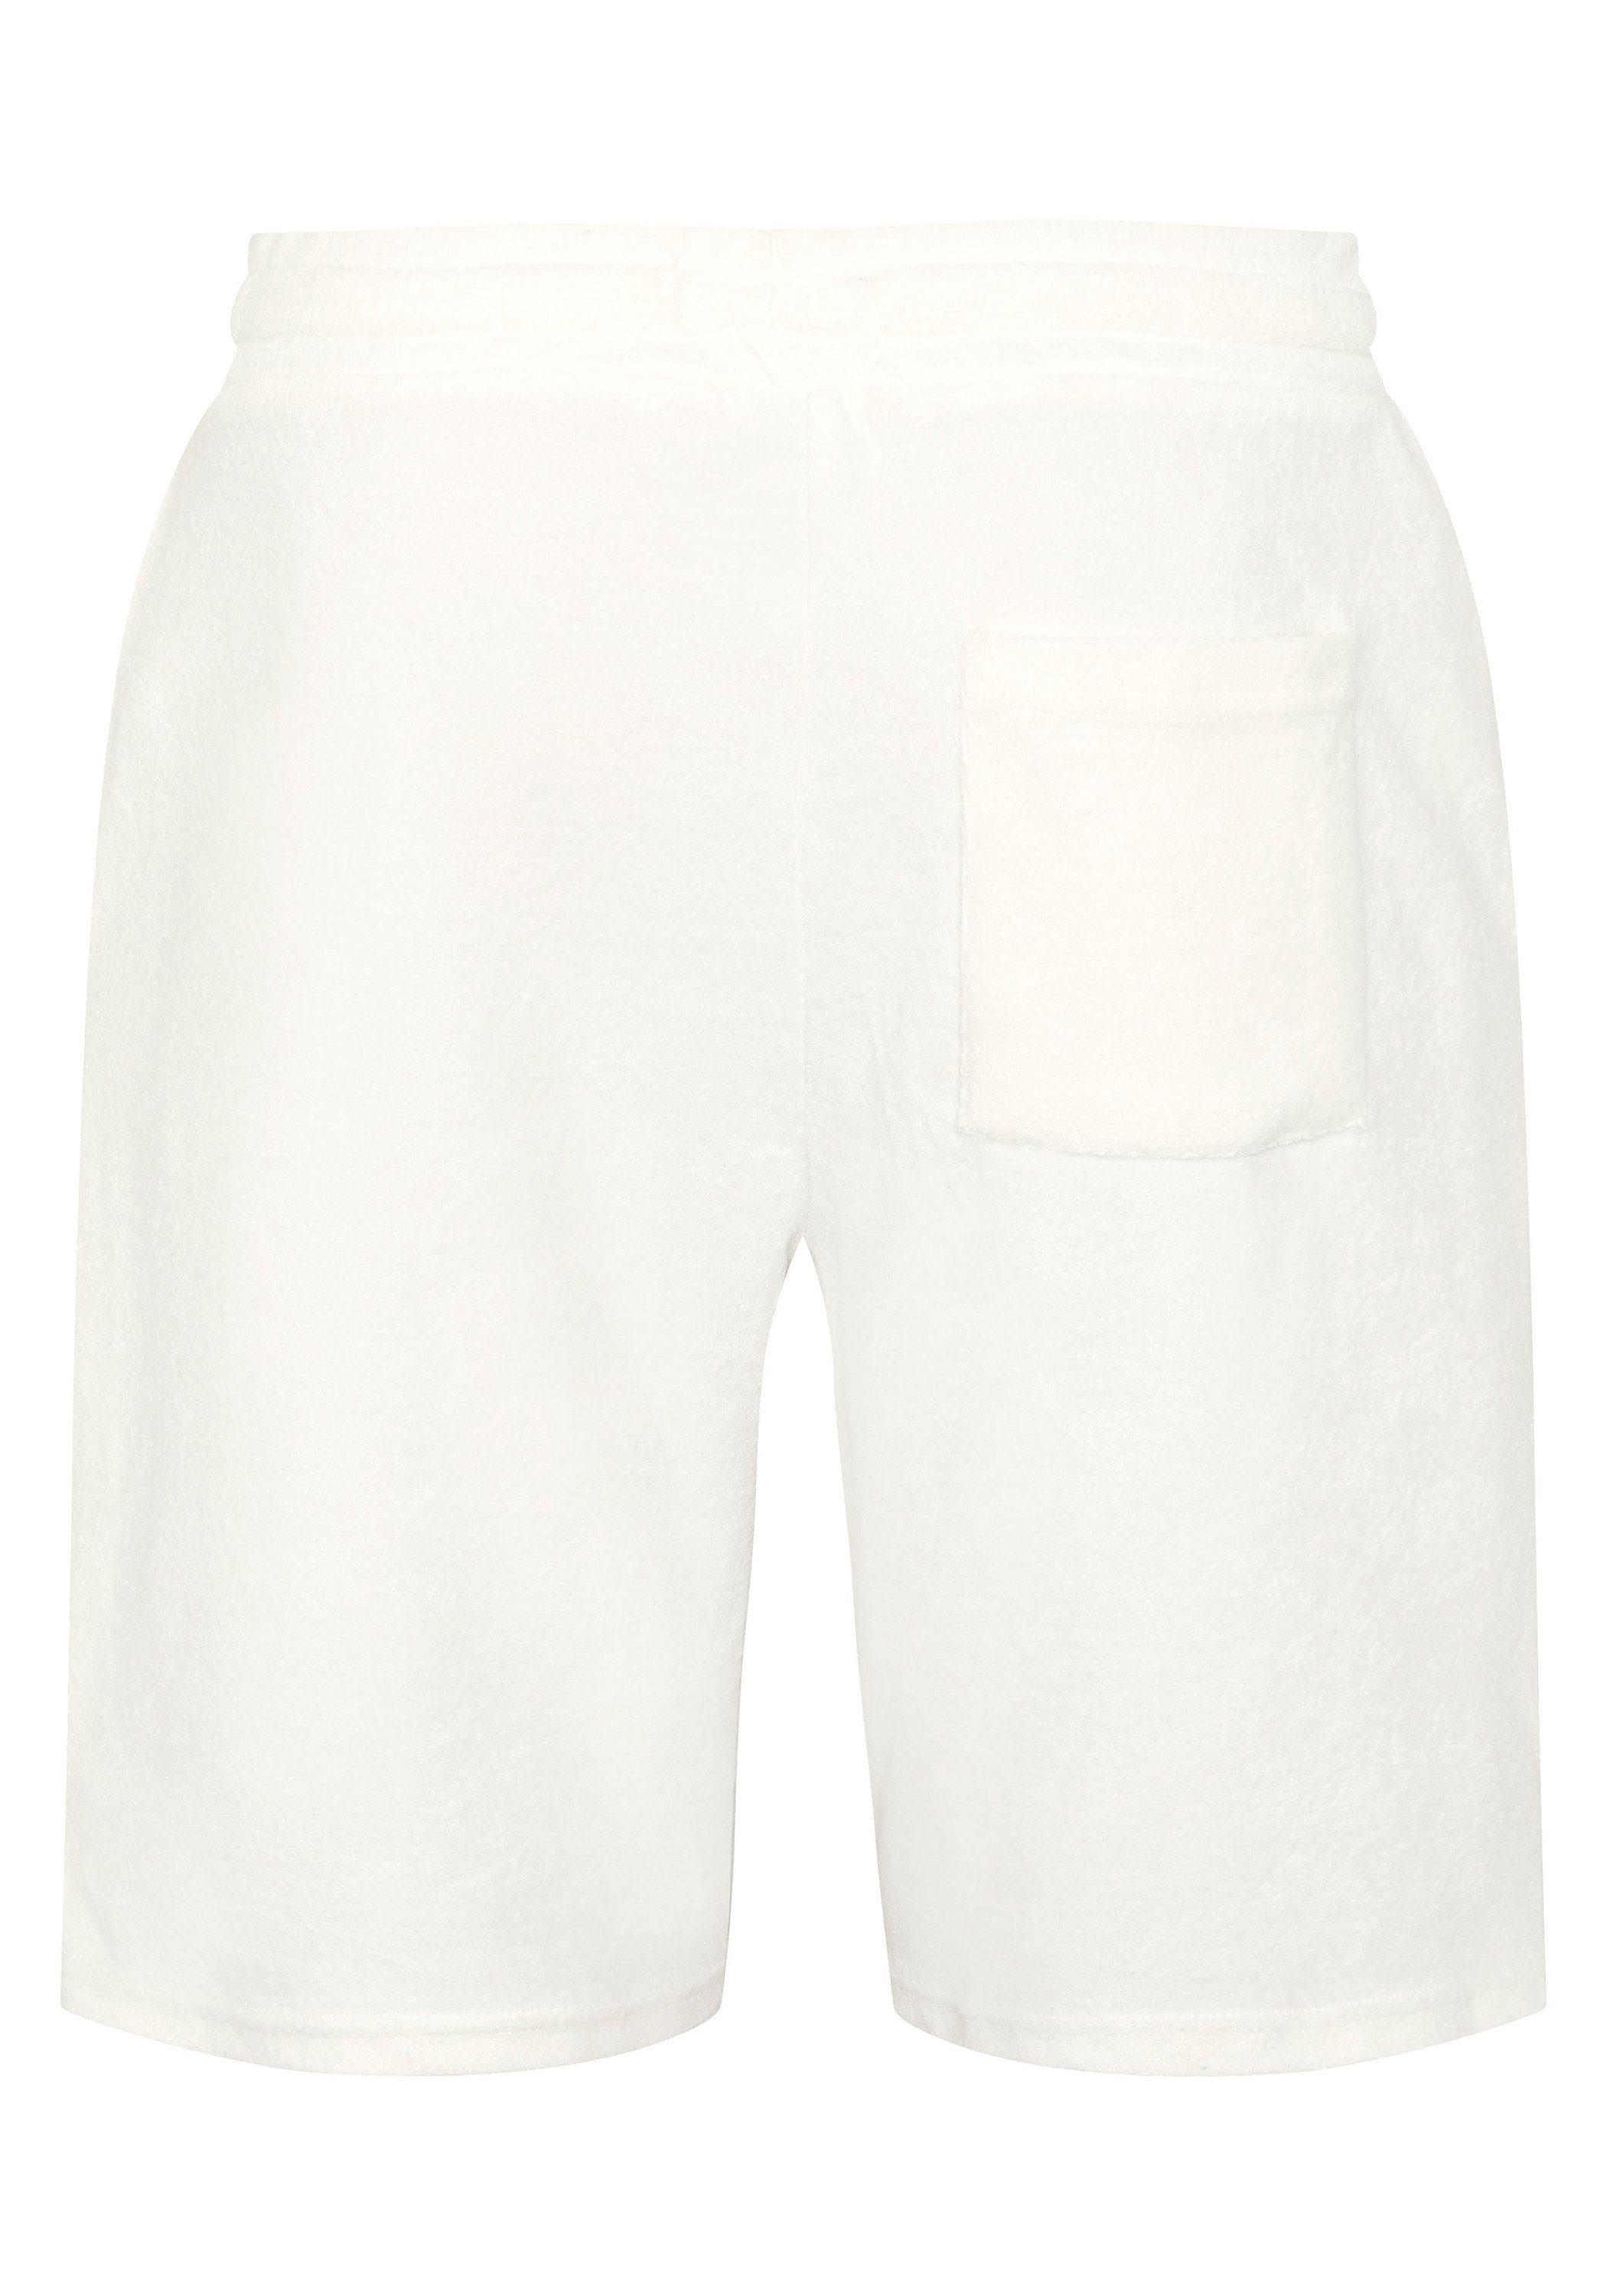 White Star Shorts 1 aus Sweatshorts Baumwollmix 11-4202 Chiemsee